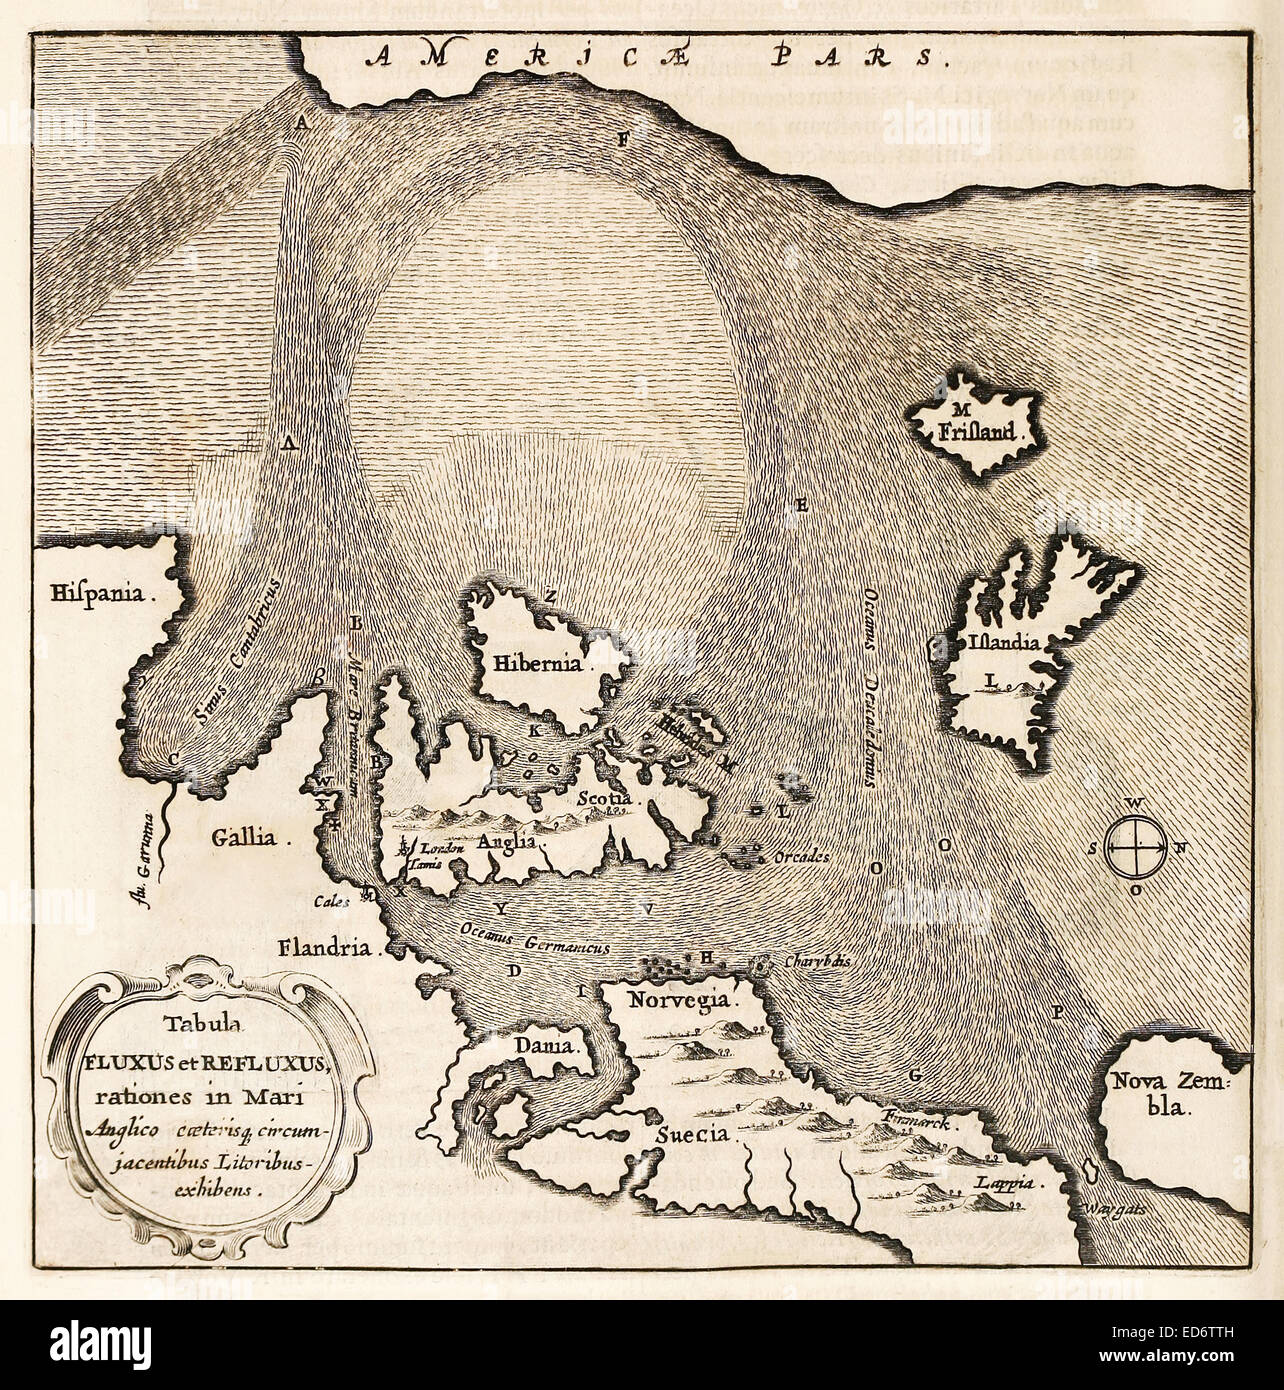 "Tabula Fluxus et Refluxus Rationes in Mari Anglico" 17. Jahrhundert Karte des Nordatlantiks zeigt Meeresströmungen. Siehe Beschreibung für mehr Informationen. Stockfoto